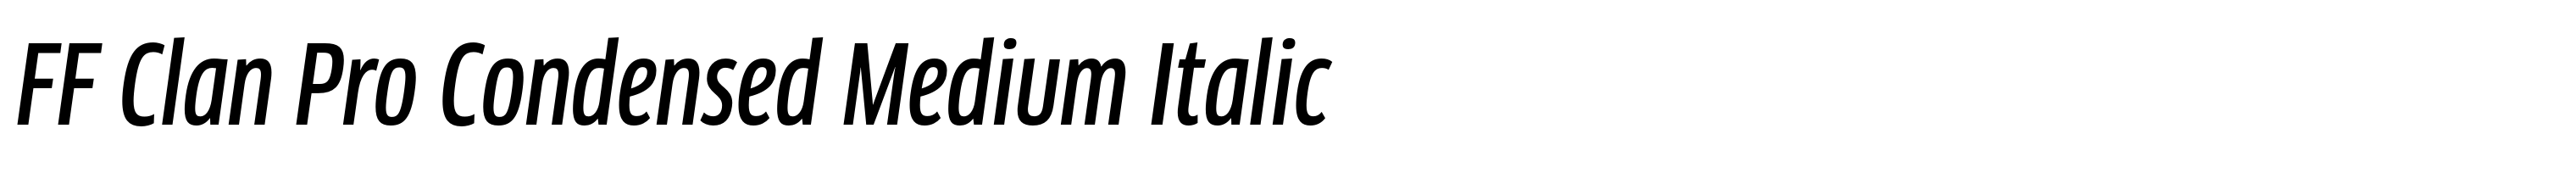 FF Clan Pro Condensed Medium Italic